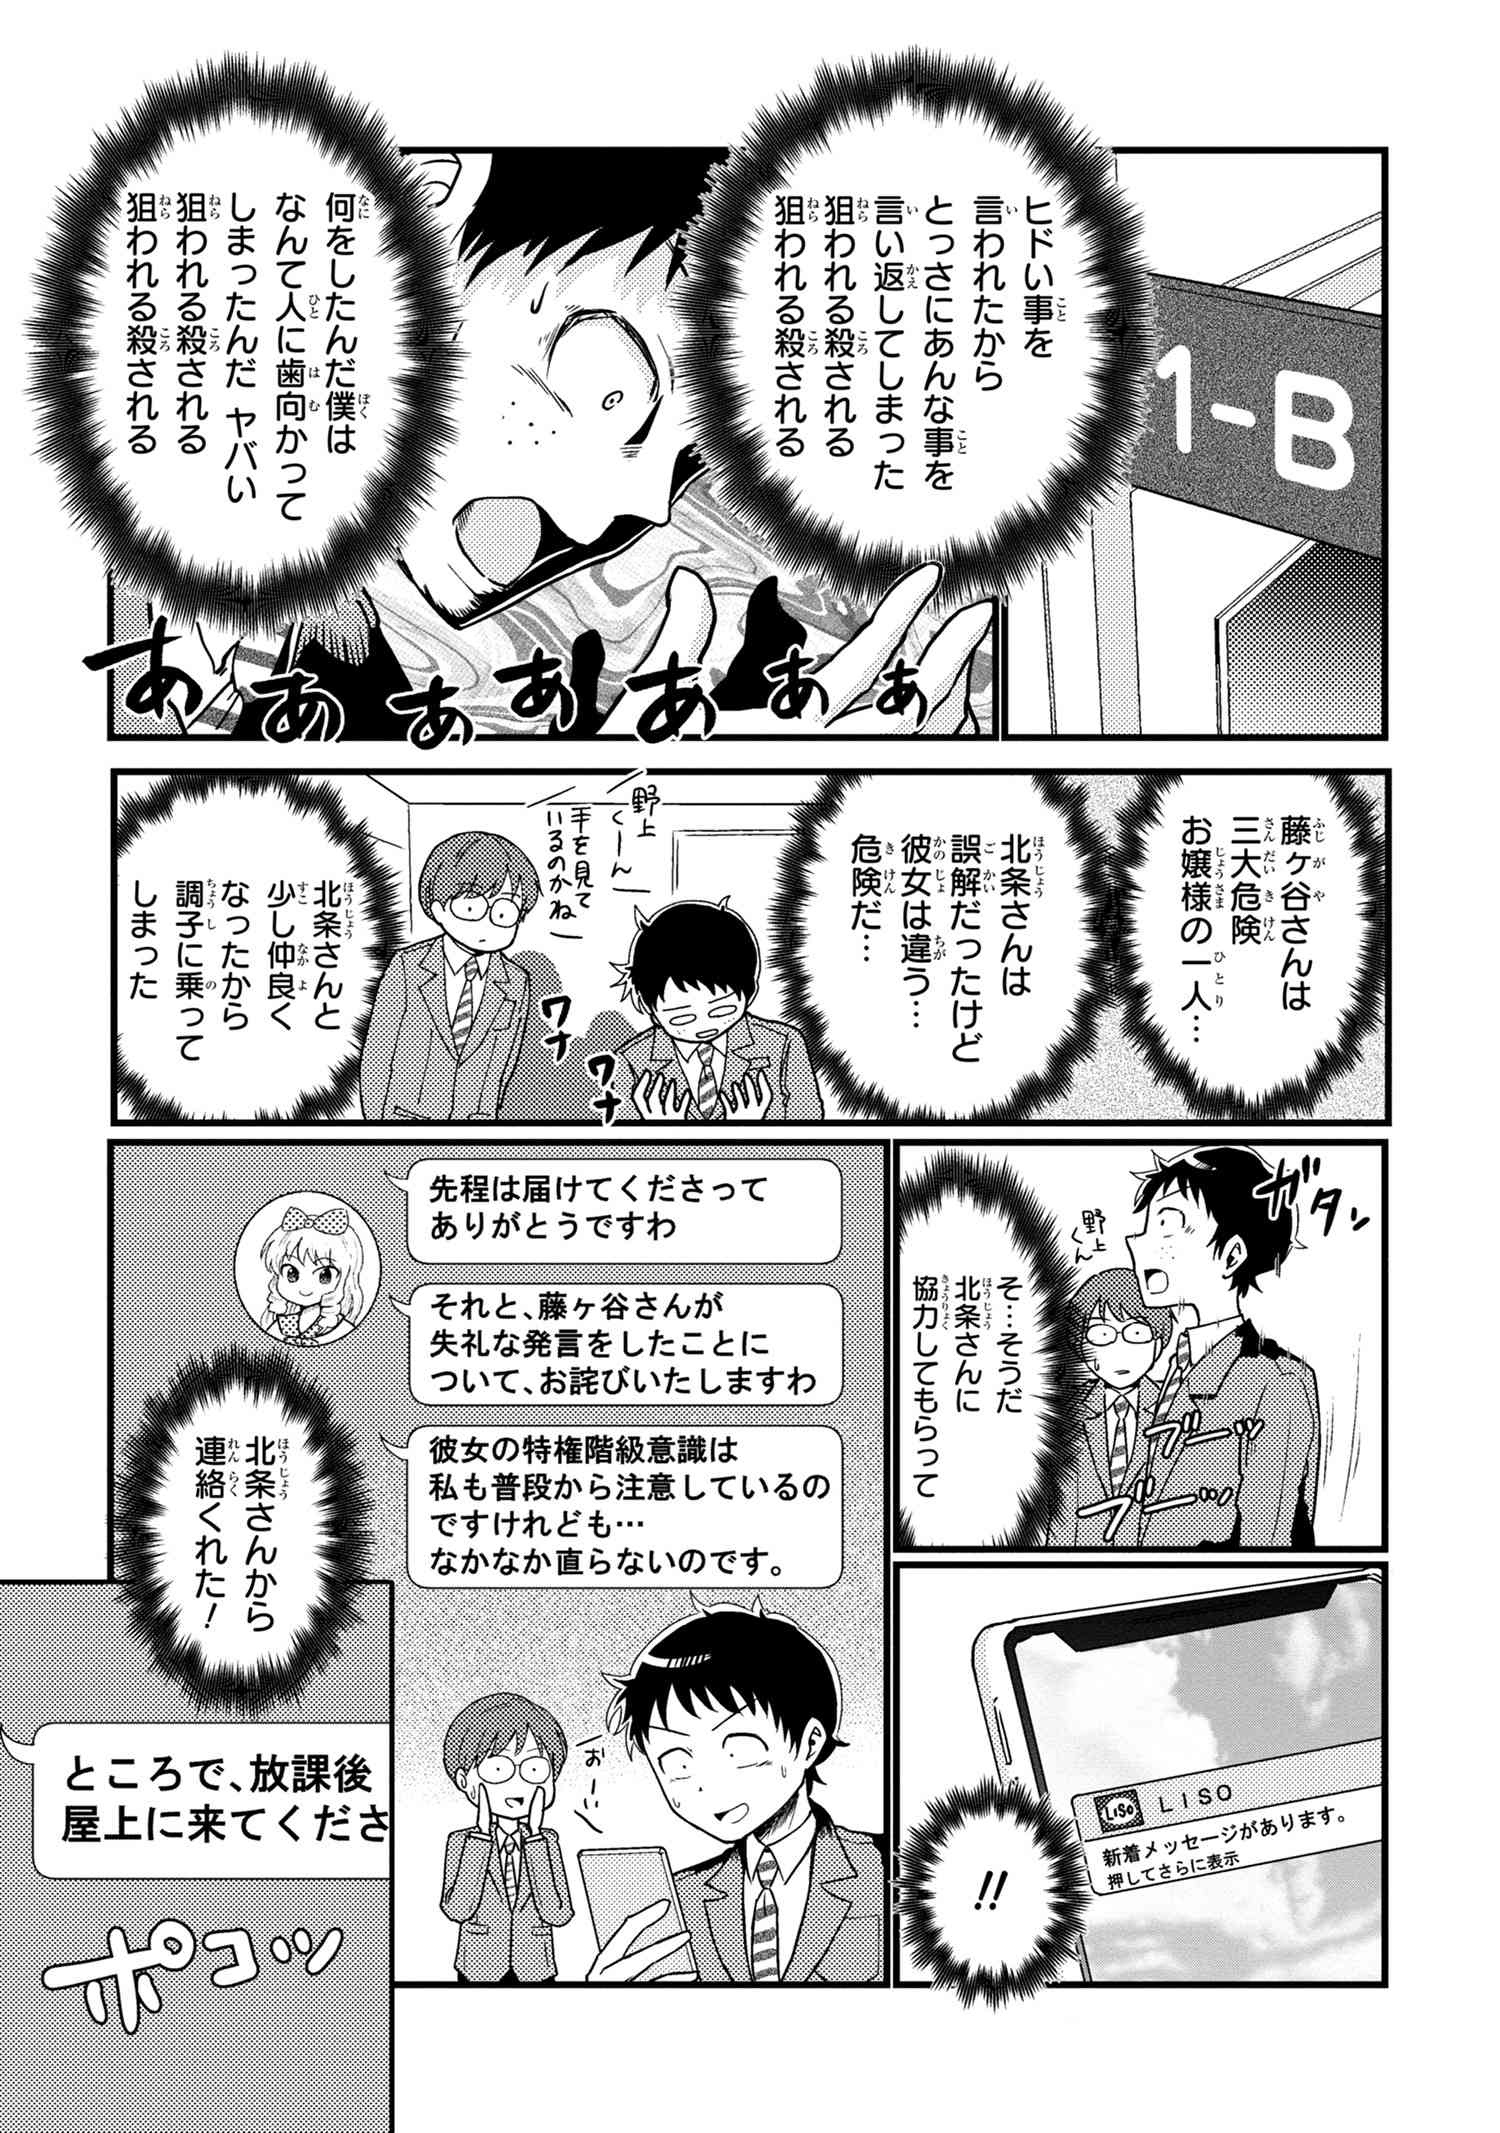 Houjou Urara no renai shousetsu o kaki nasai! - Chapter 12 - Page 2